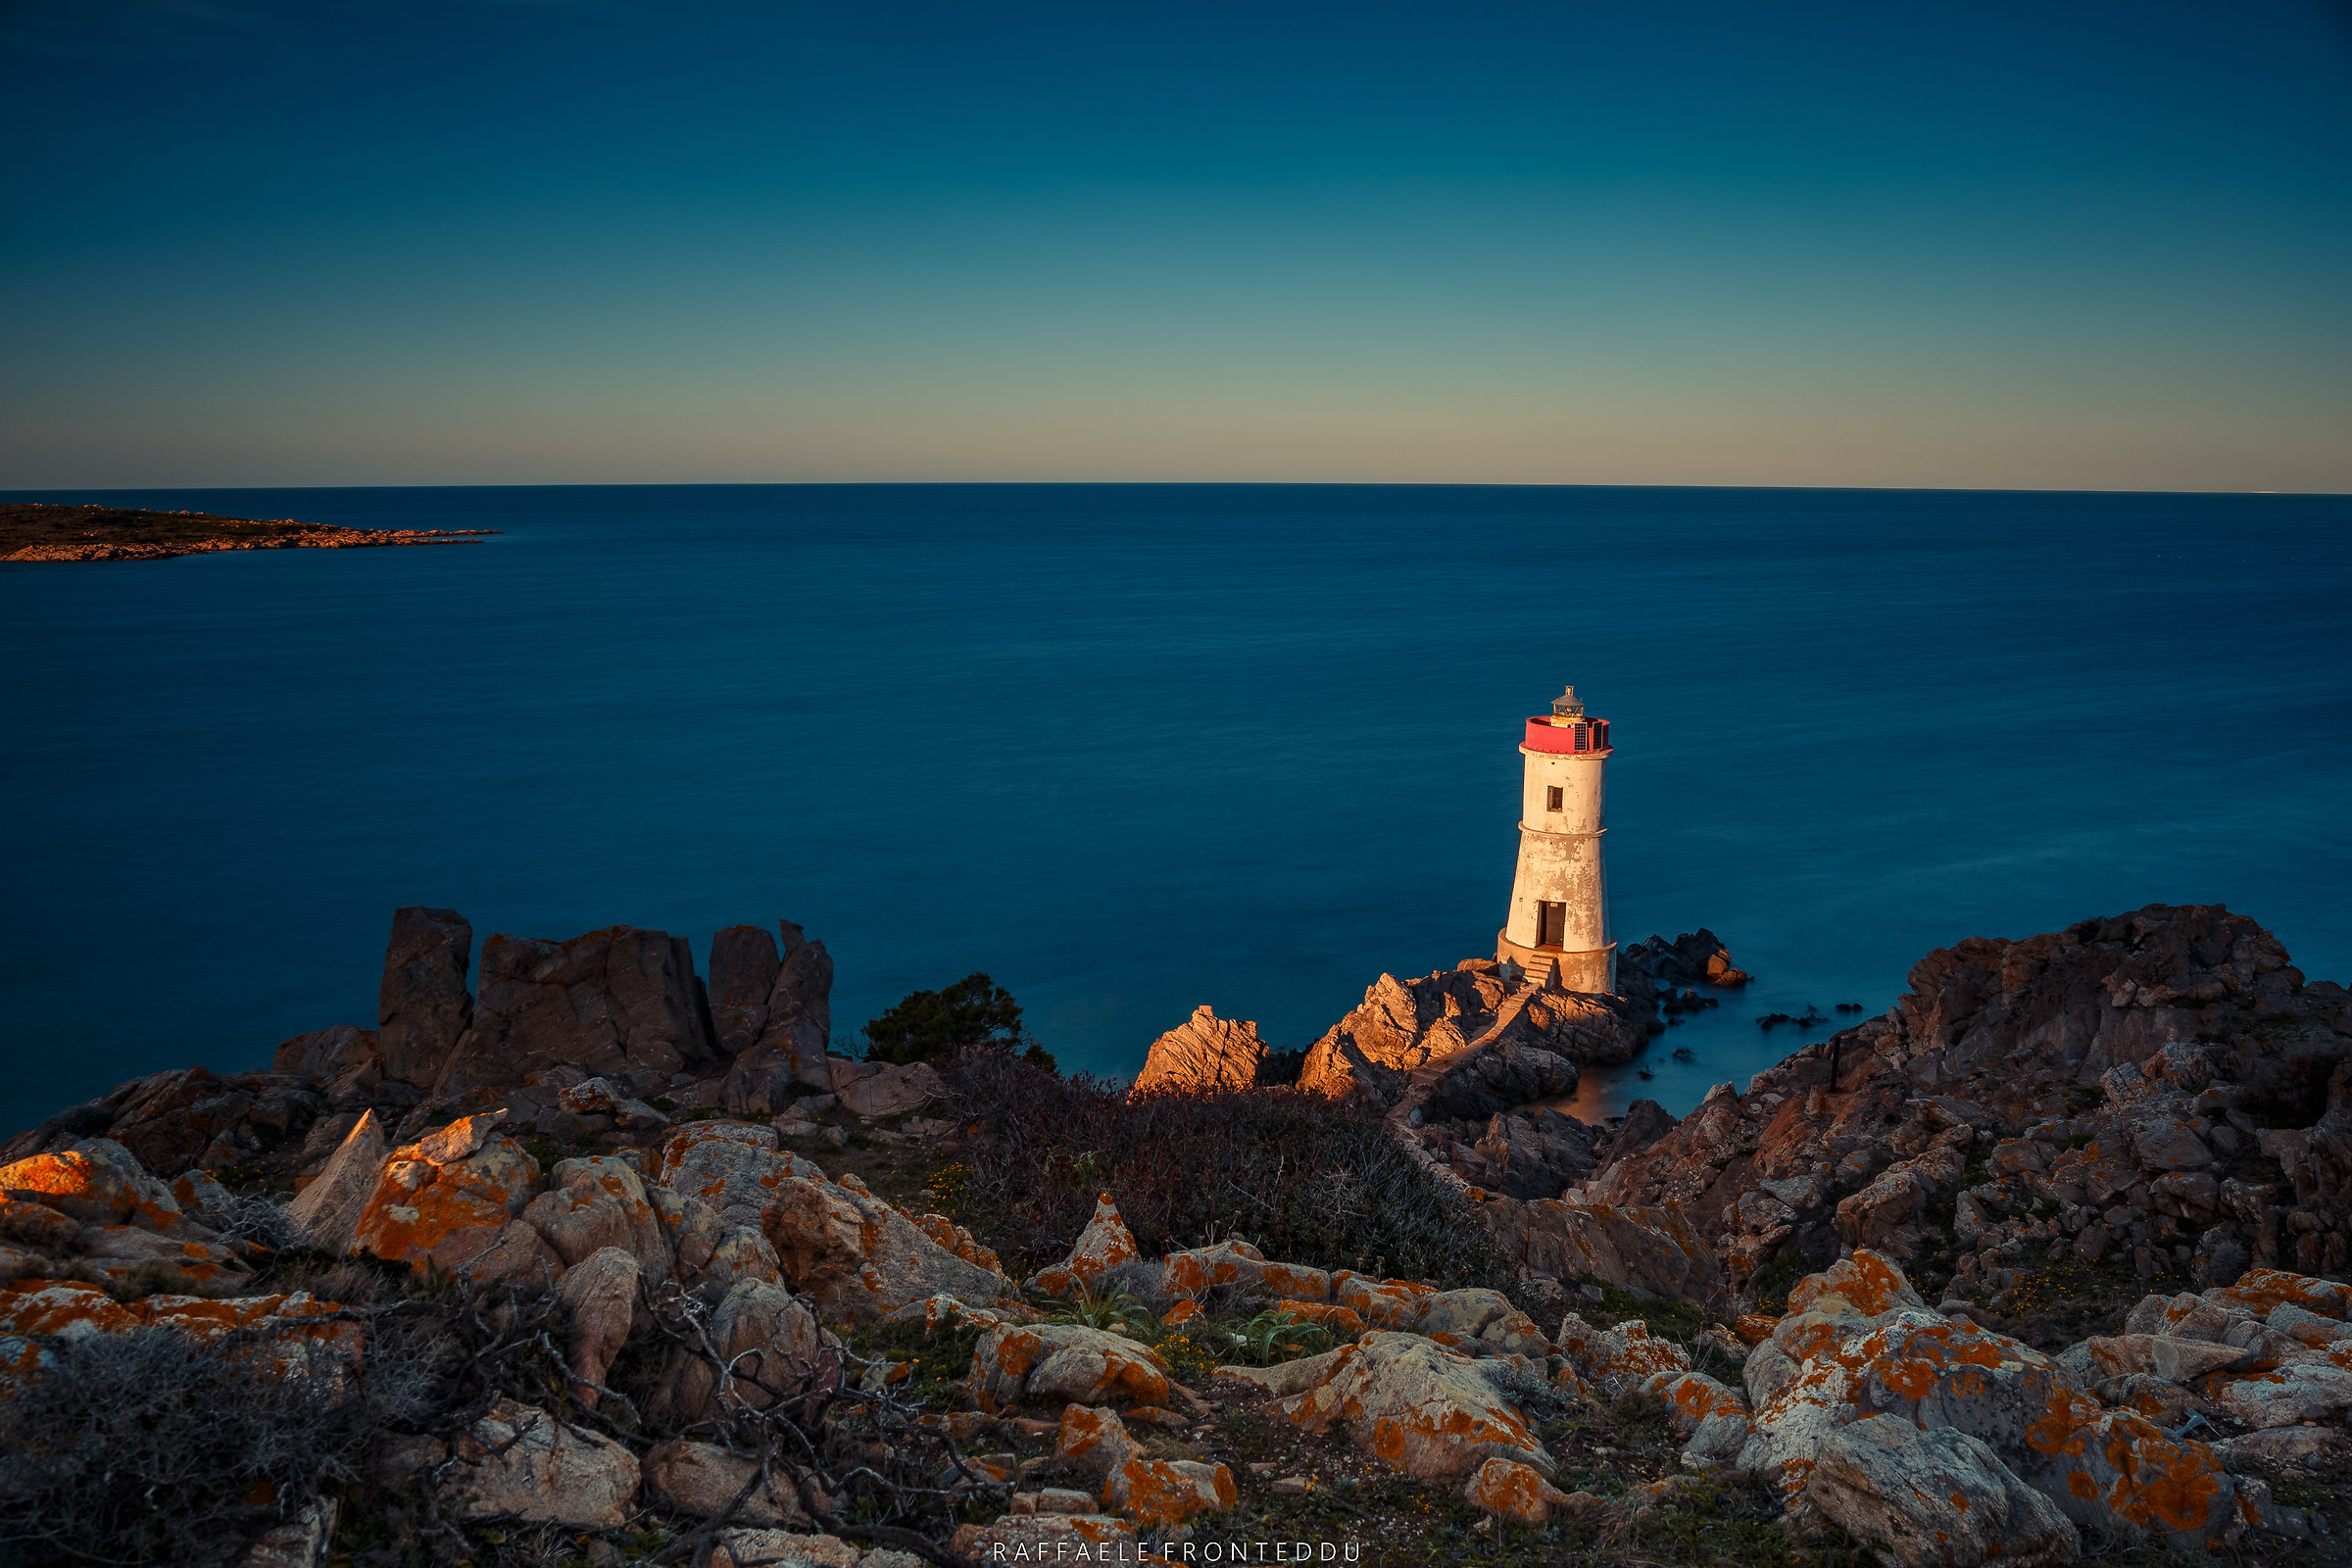 The old Lighthouse of Capo Ferro, Costa Smeralda, Sardinia...